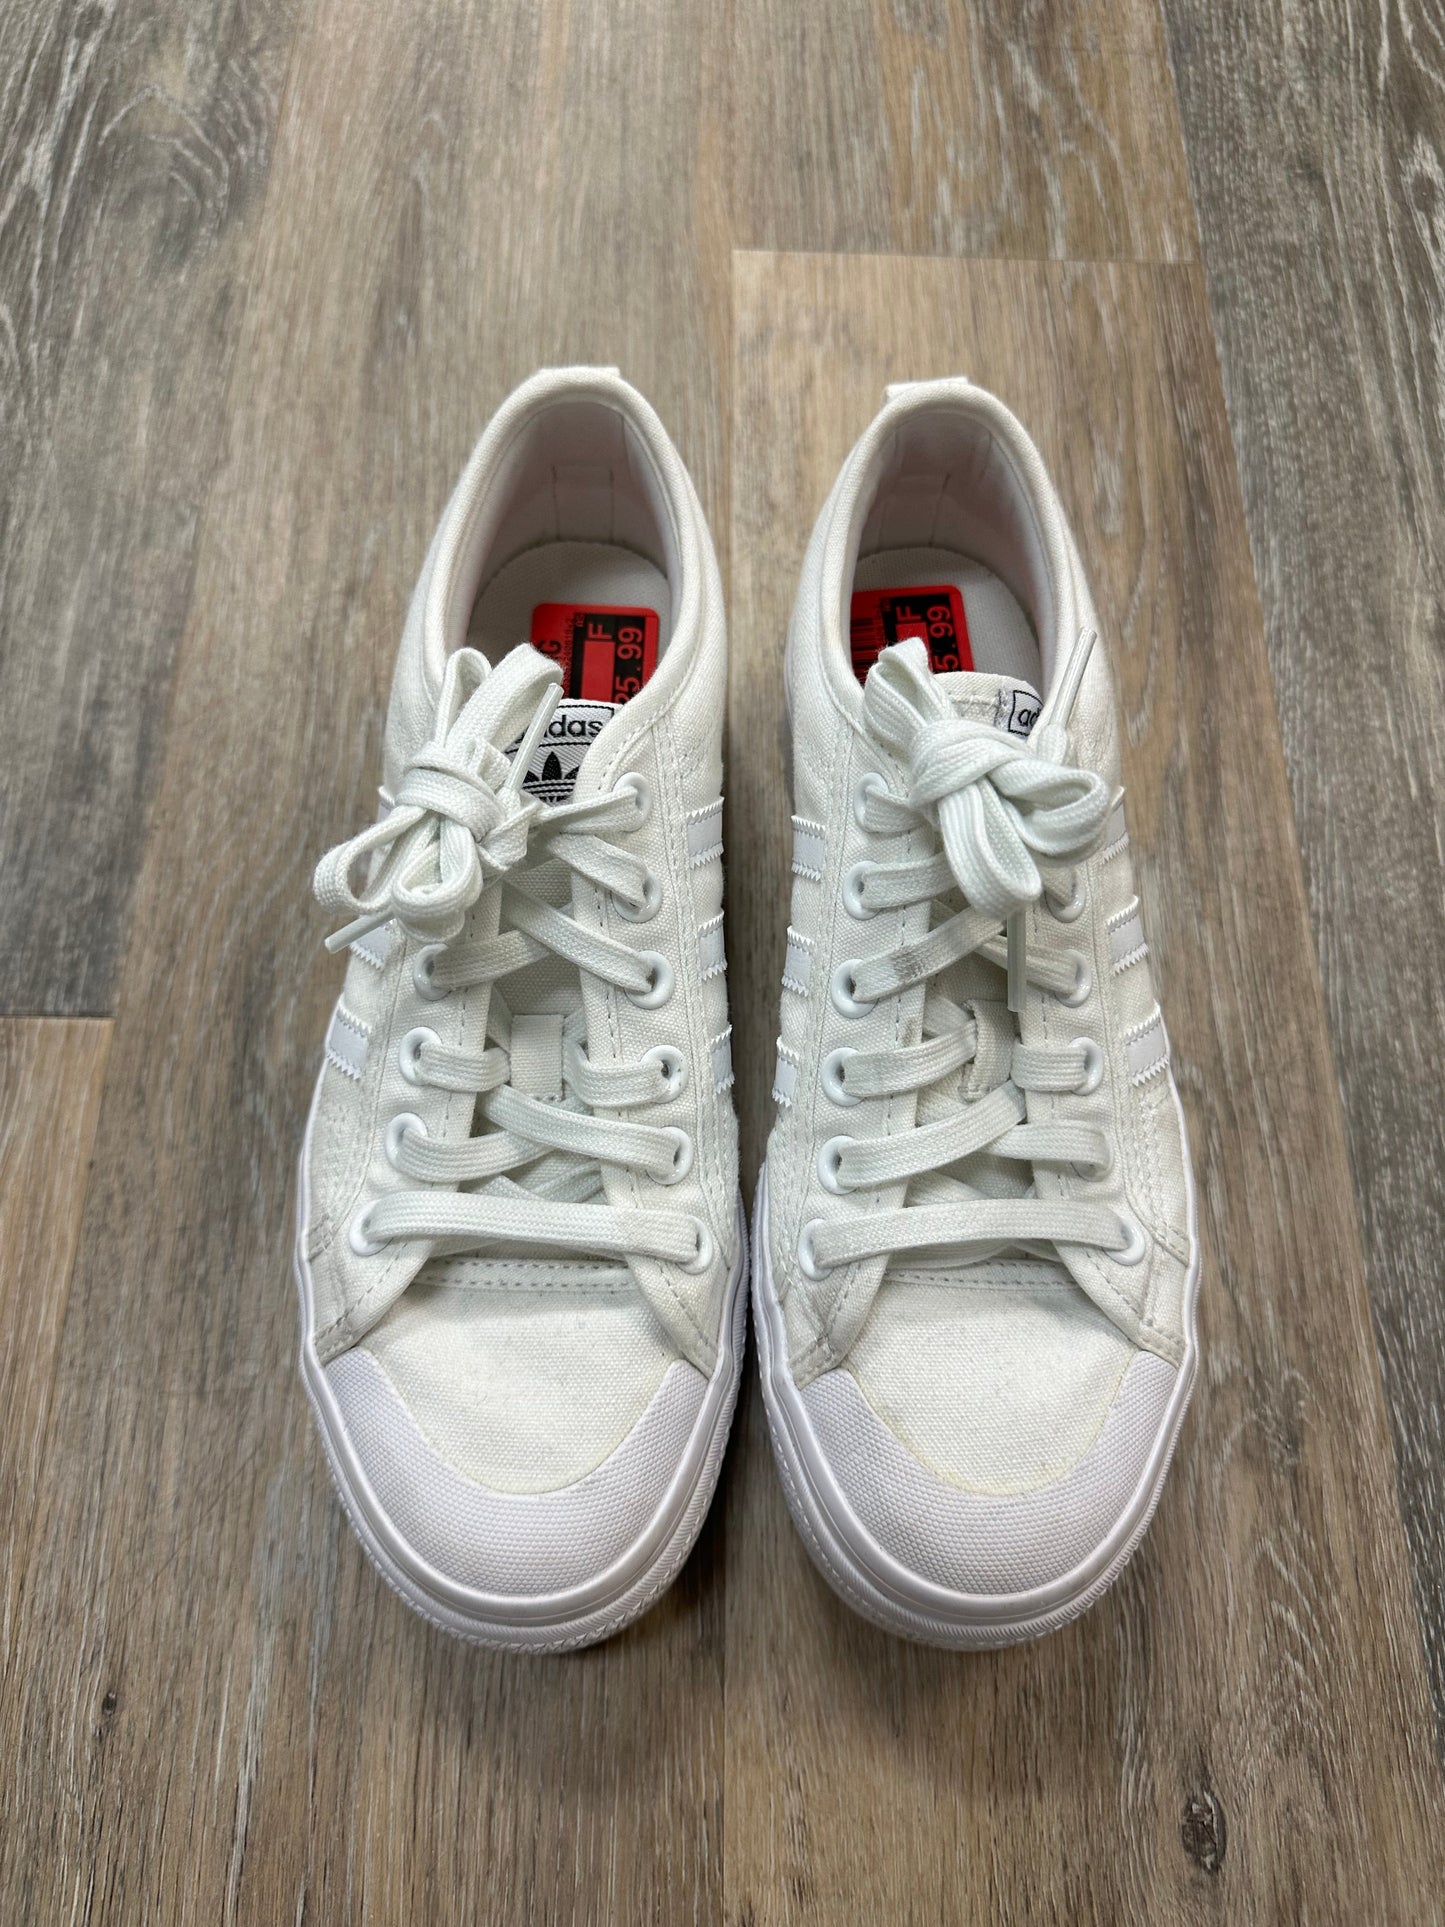 White Shoes Athletic Adidas, Size 7.5